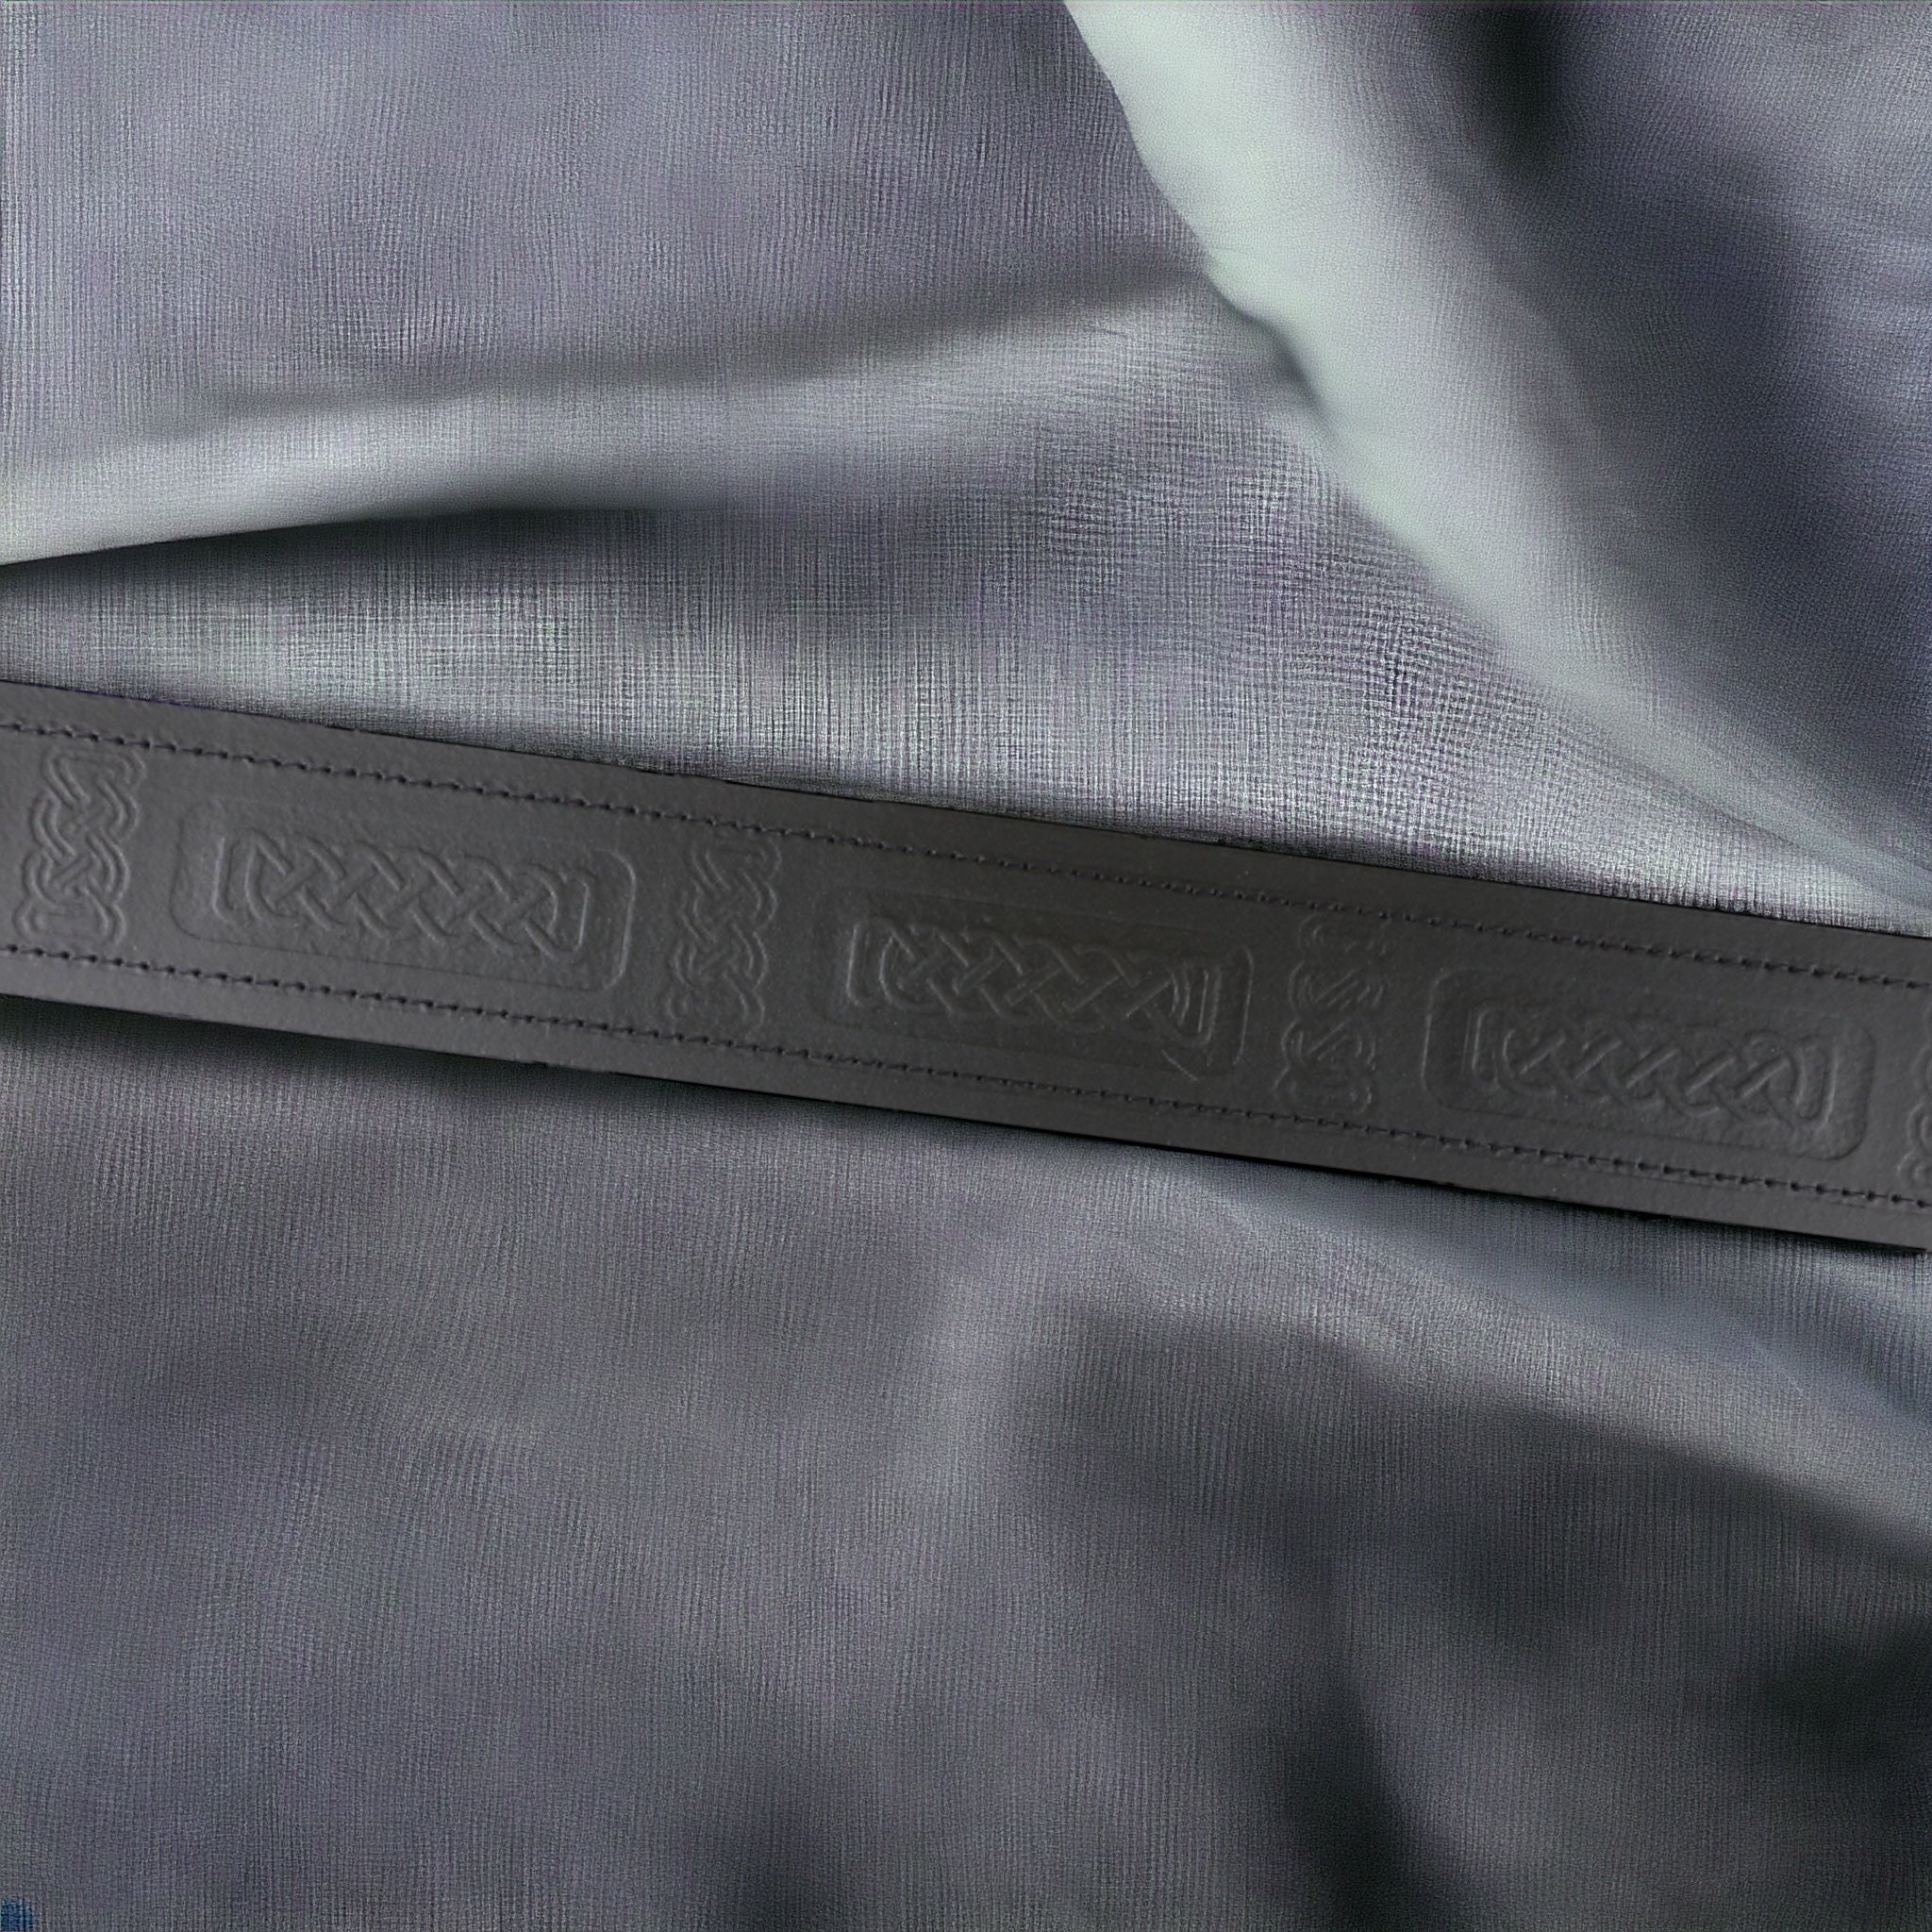 Celtic embossed kilt belt  made by Margaret Morrison